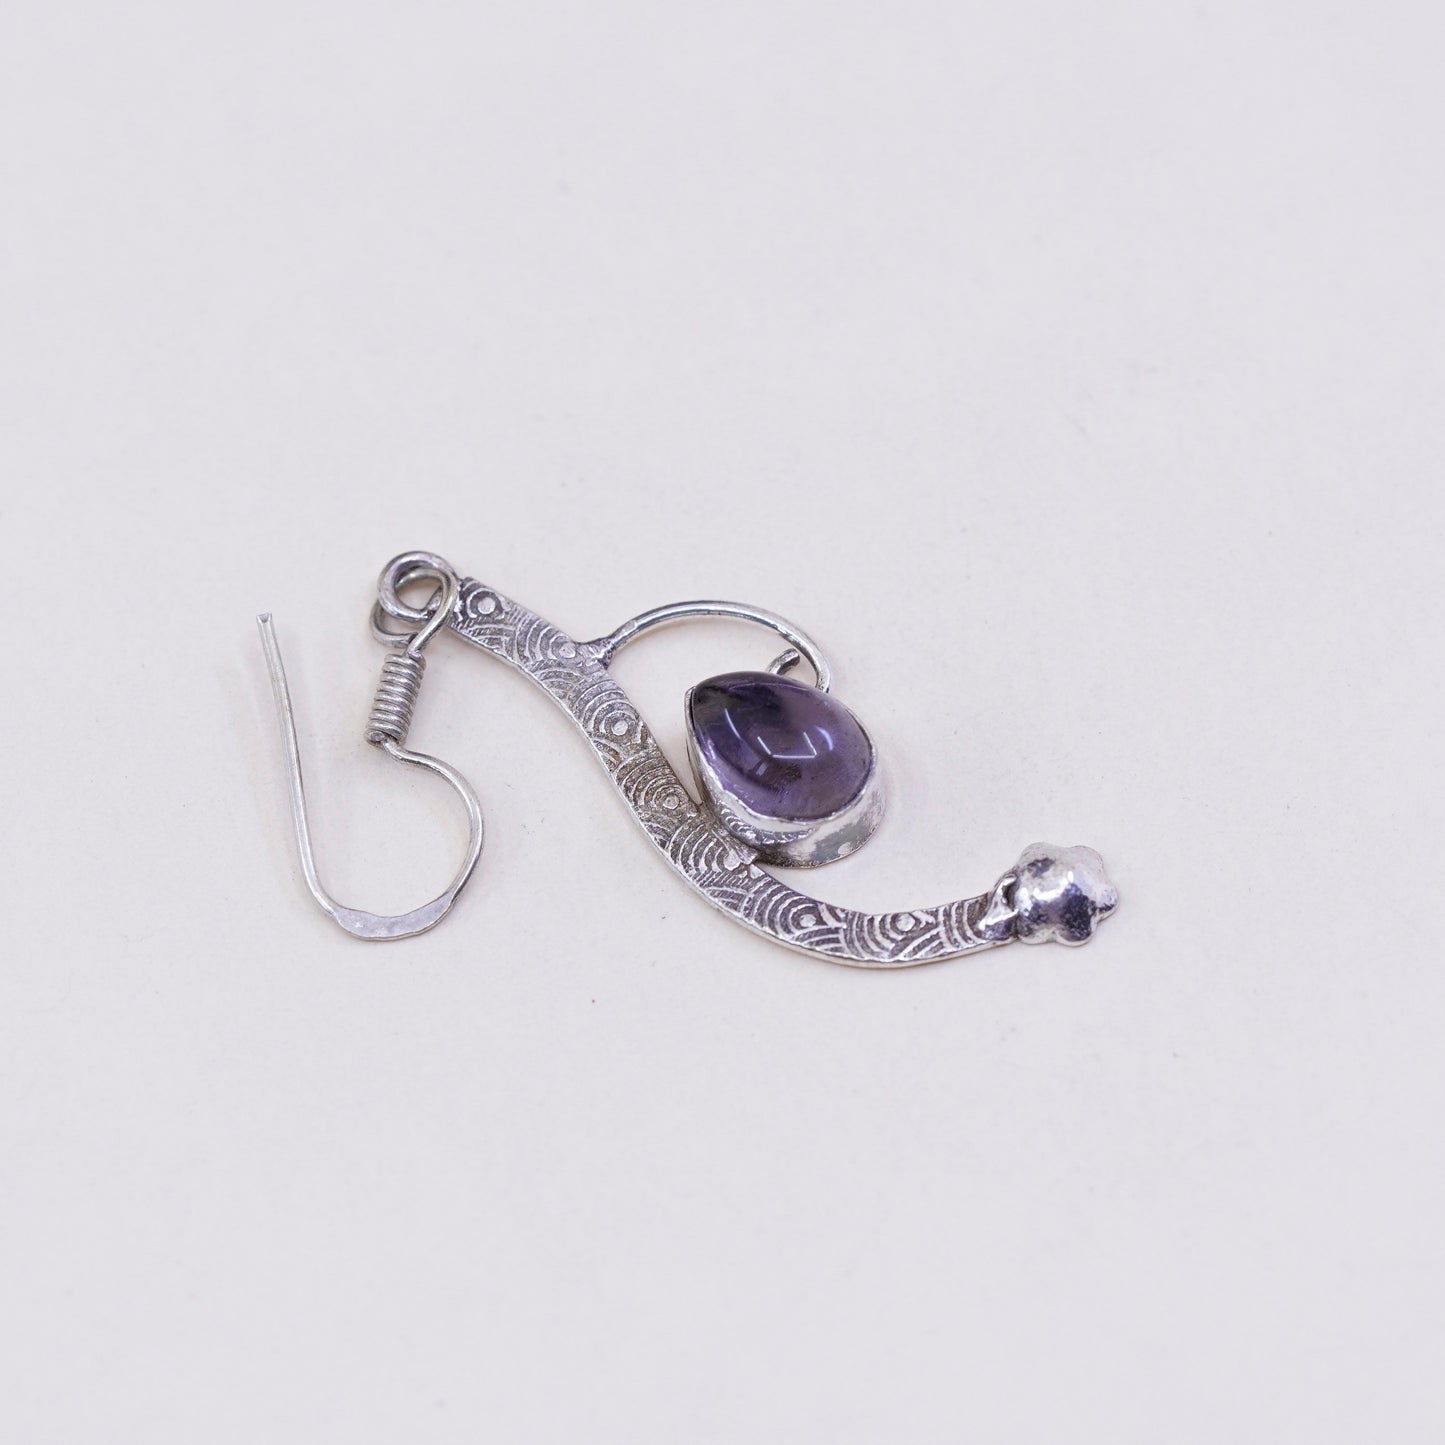 Vintage Sterling 925 silver handmade earrings with amethyst teardrops